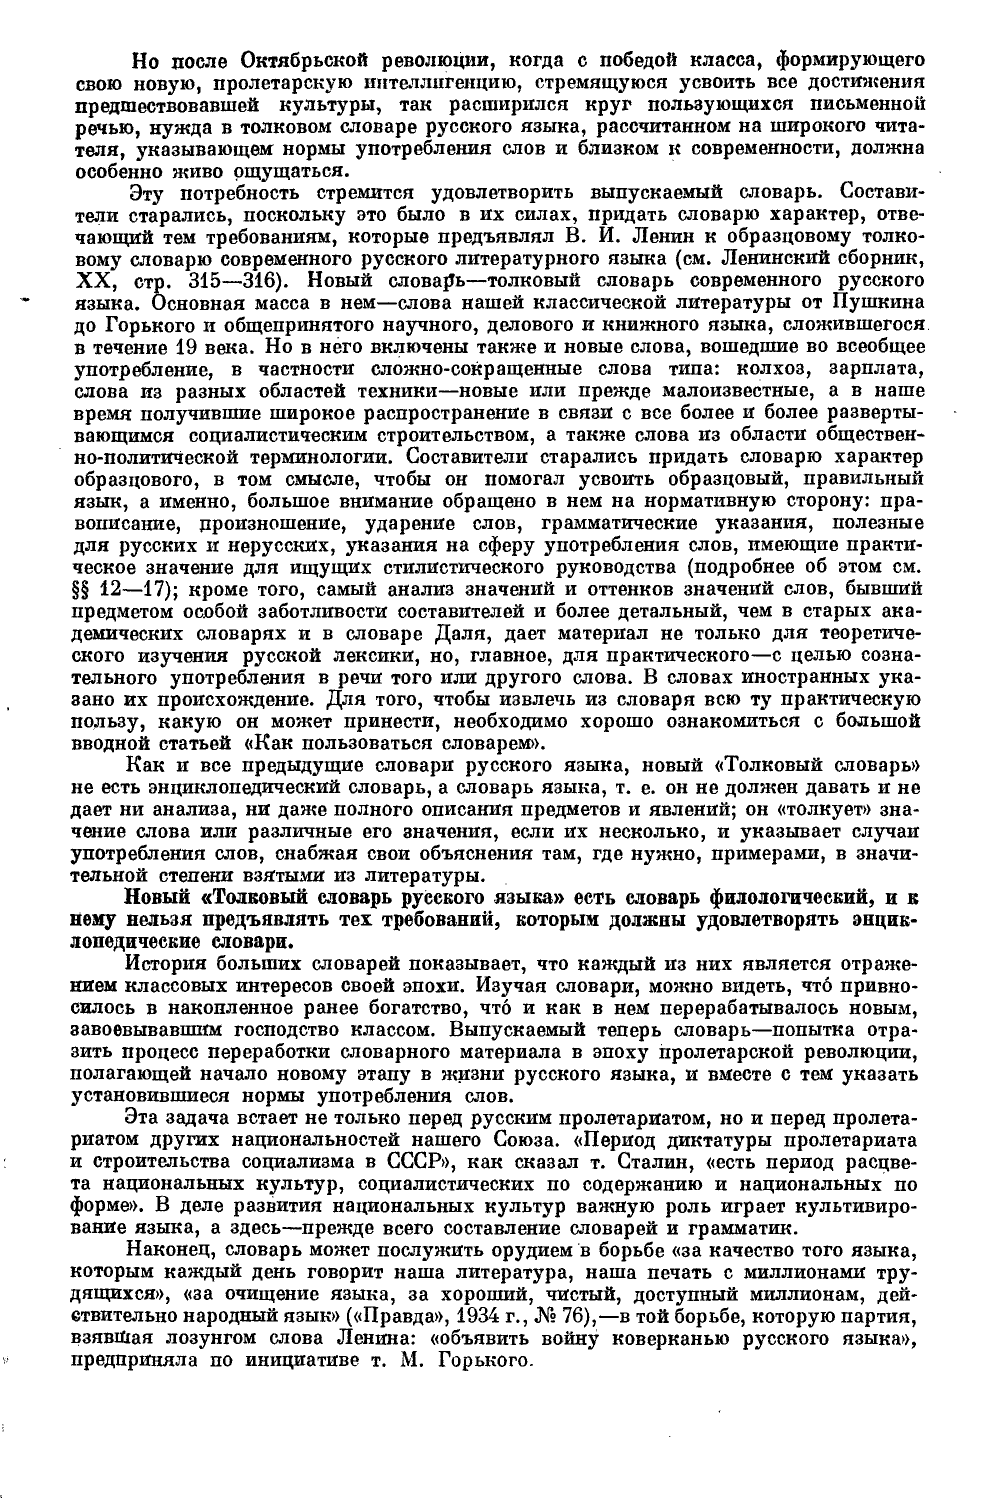 толковый словарь Ушакова фотокопия сканированная страница книги